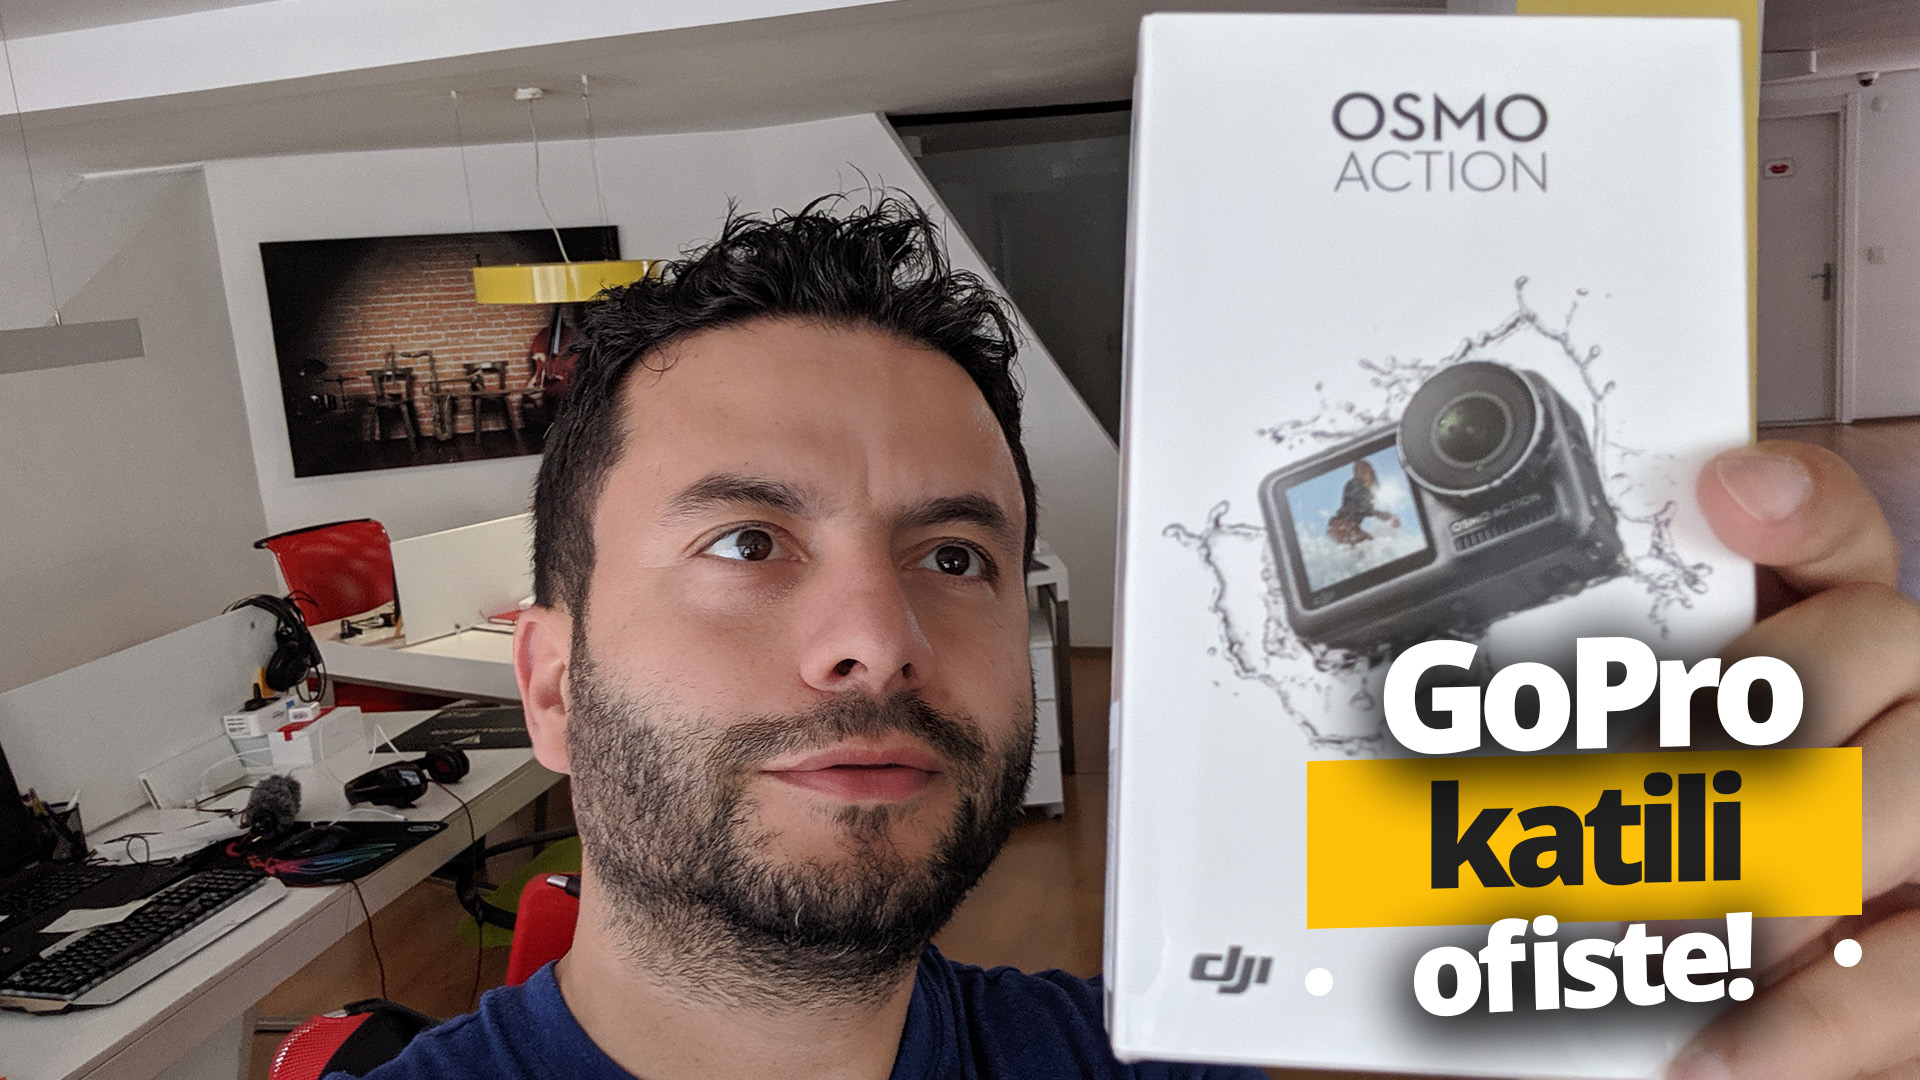 GoPro katili ofise geldi DJI Osmo Action kutu açılışı